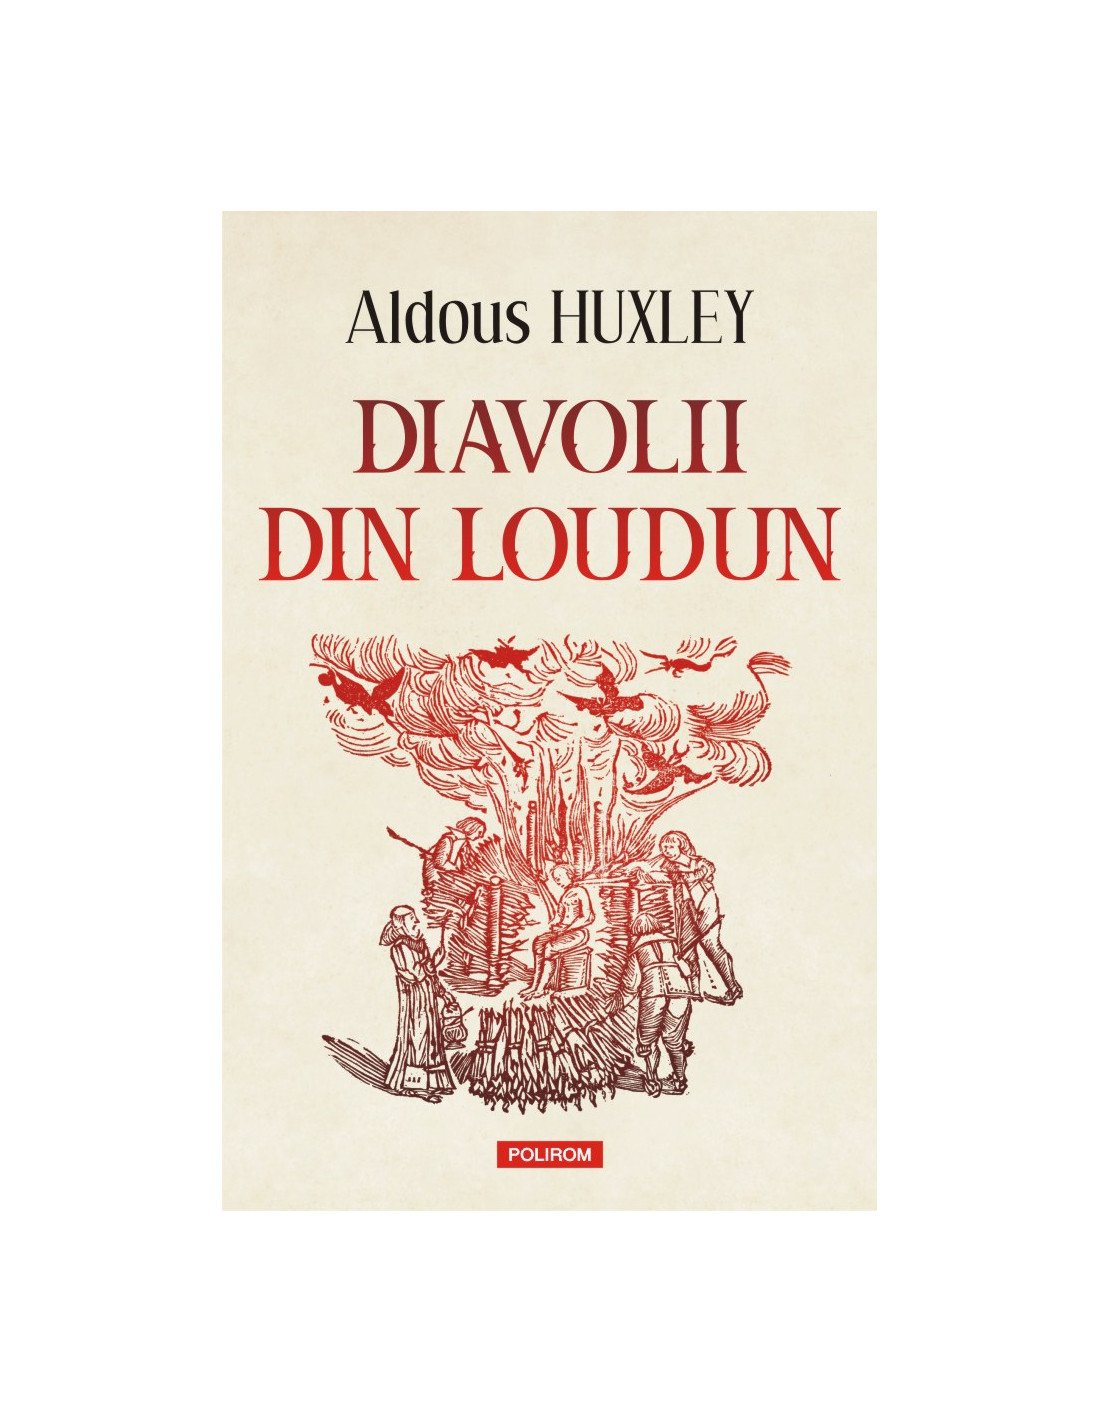  POLIROM Una dintre cele mai bune lucrări non-ficționale ale lui Aldous Huxley: Diavolii din Loudun